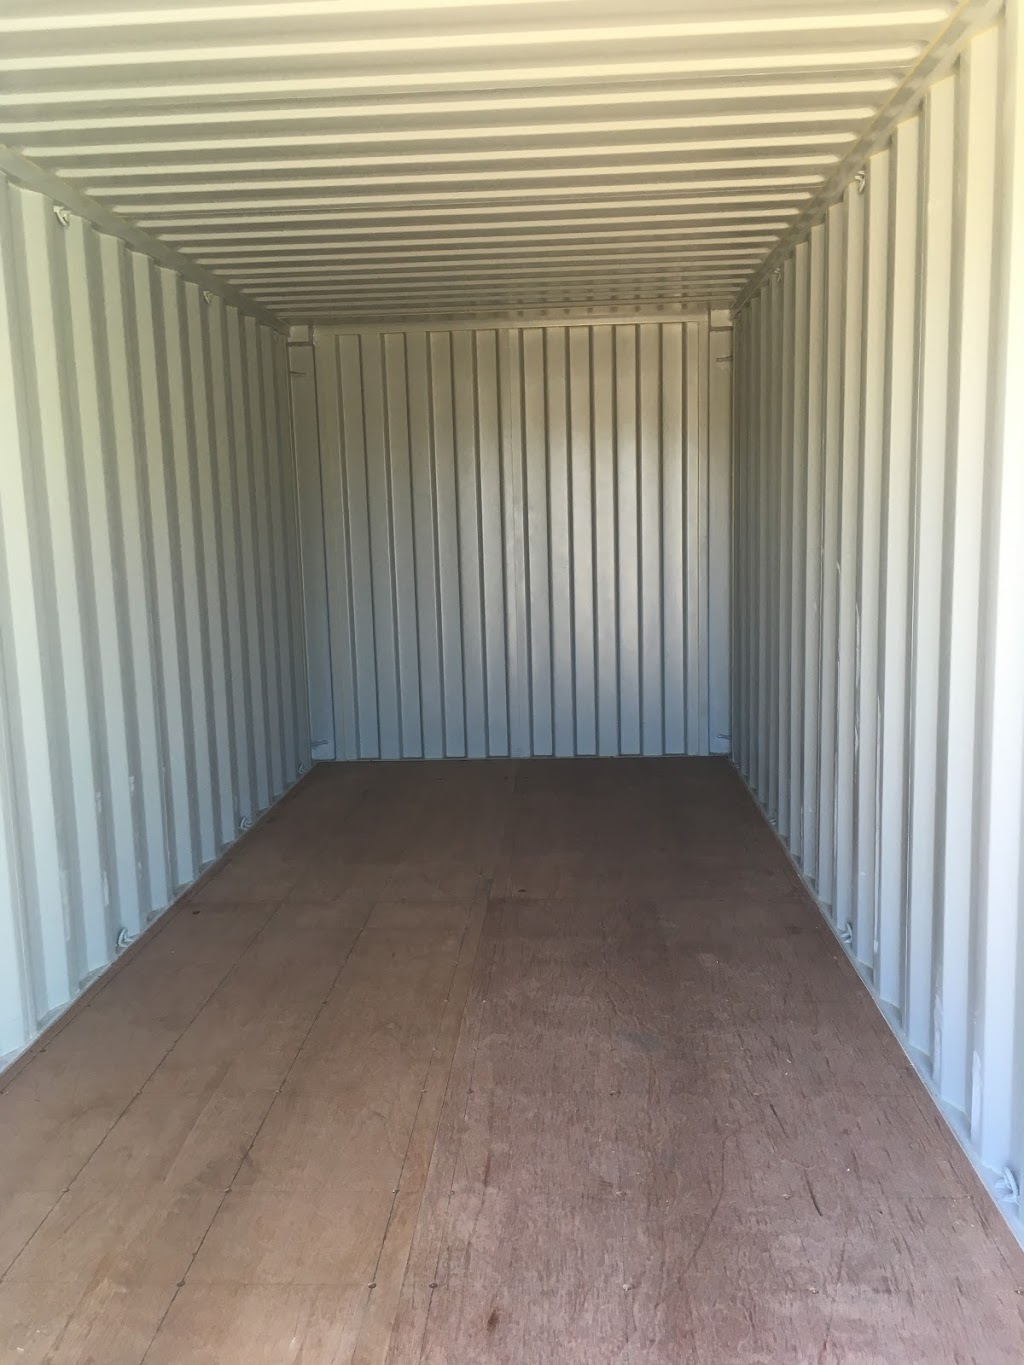 Woodford Self Storage | storage | 32 Chambers Rd, Woodford QLD 4514, Australia | 0754963352 OR +61 7 5496 3352